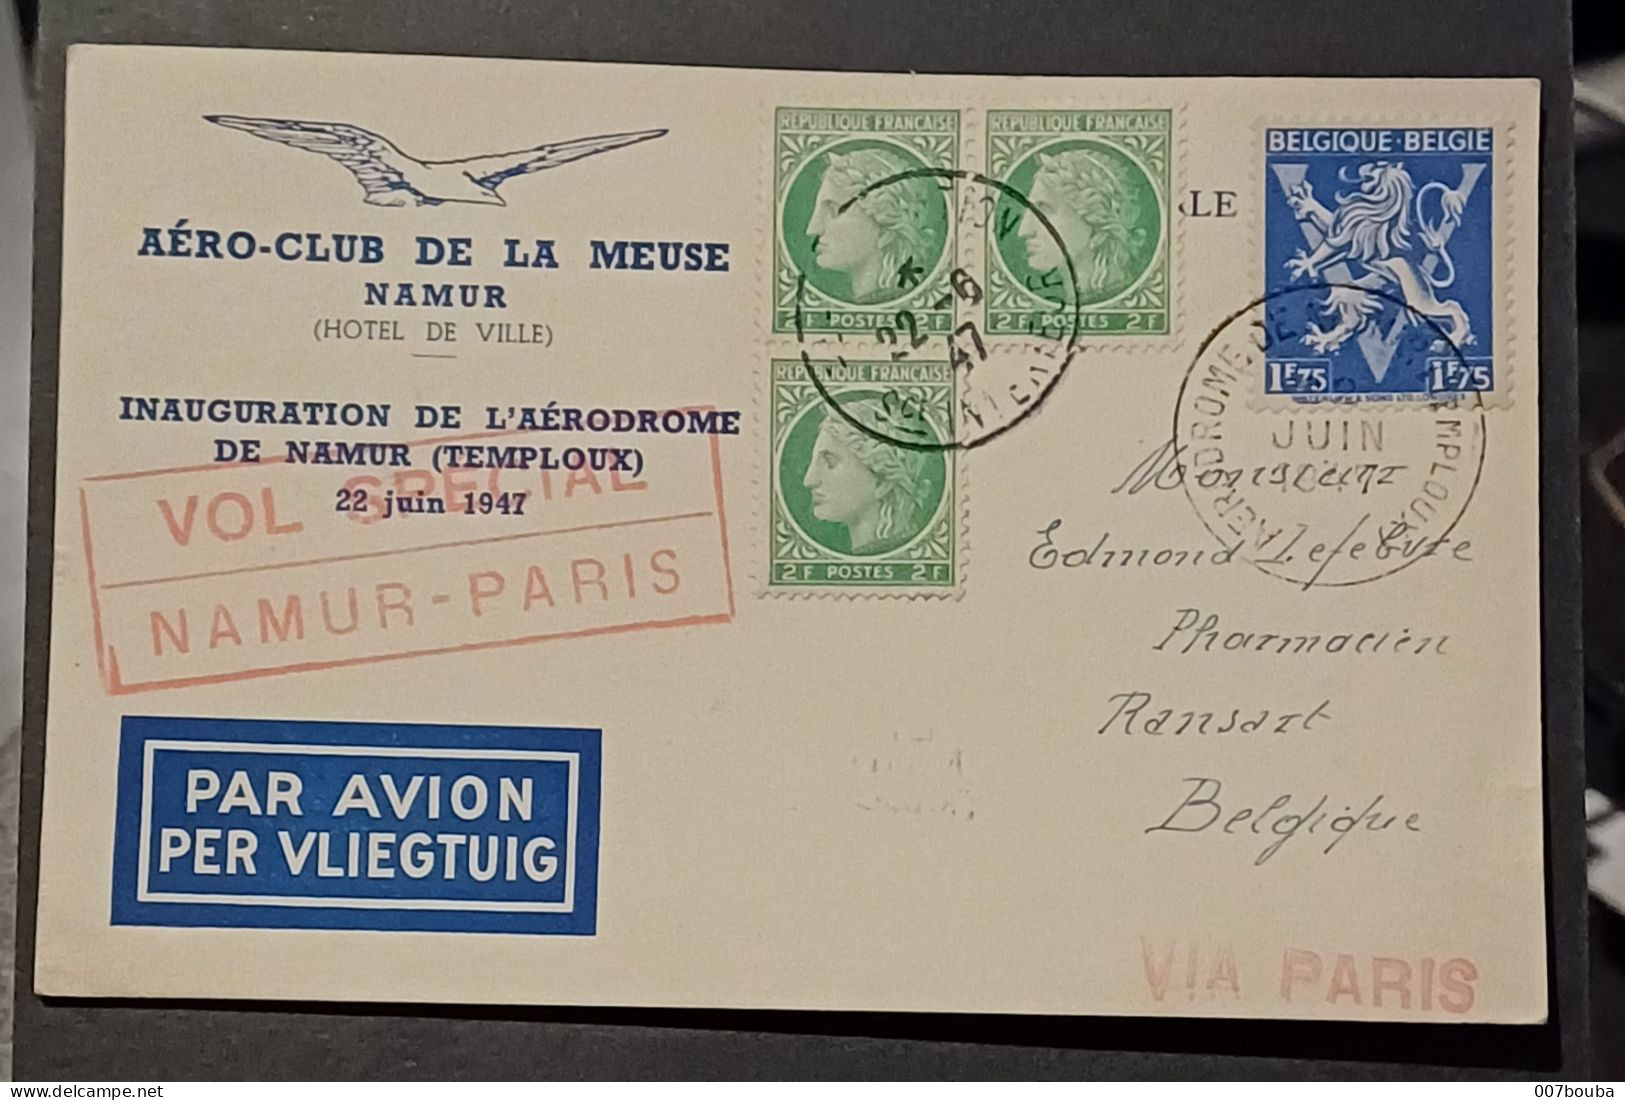 AEROPHILATÉLIE / AERO CLUB DE LA MEUSE 1947 / VOL SPECIAL NAMUR PARIS - Covers & Documents